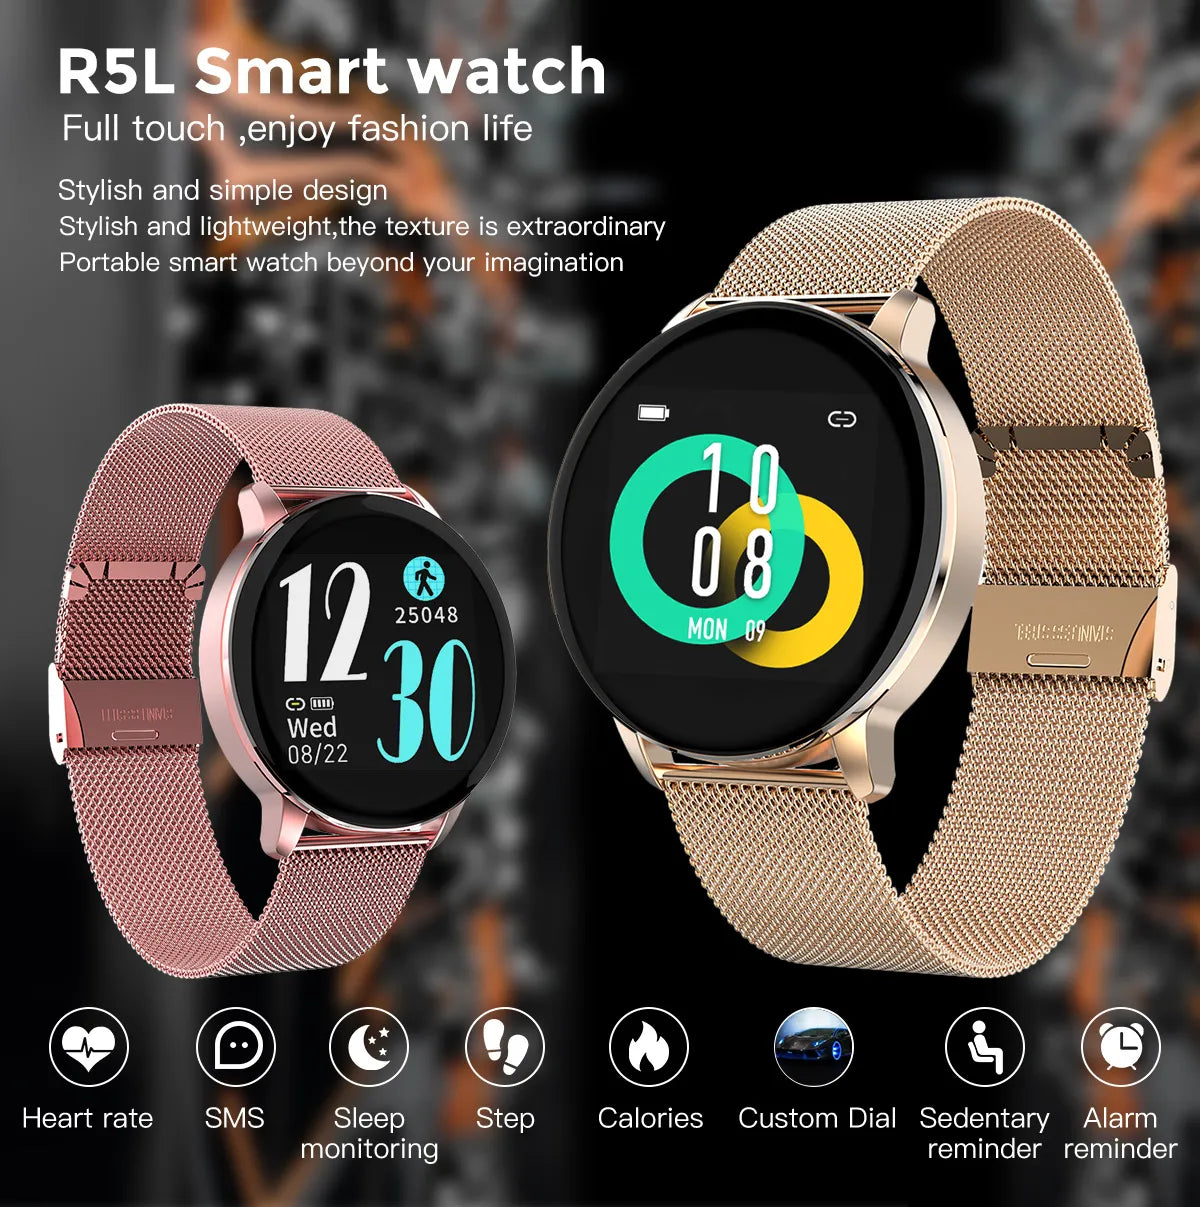 Women's Smart Watch | R5L Smart Watch | ElectoWatch